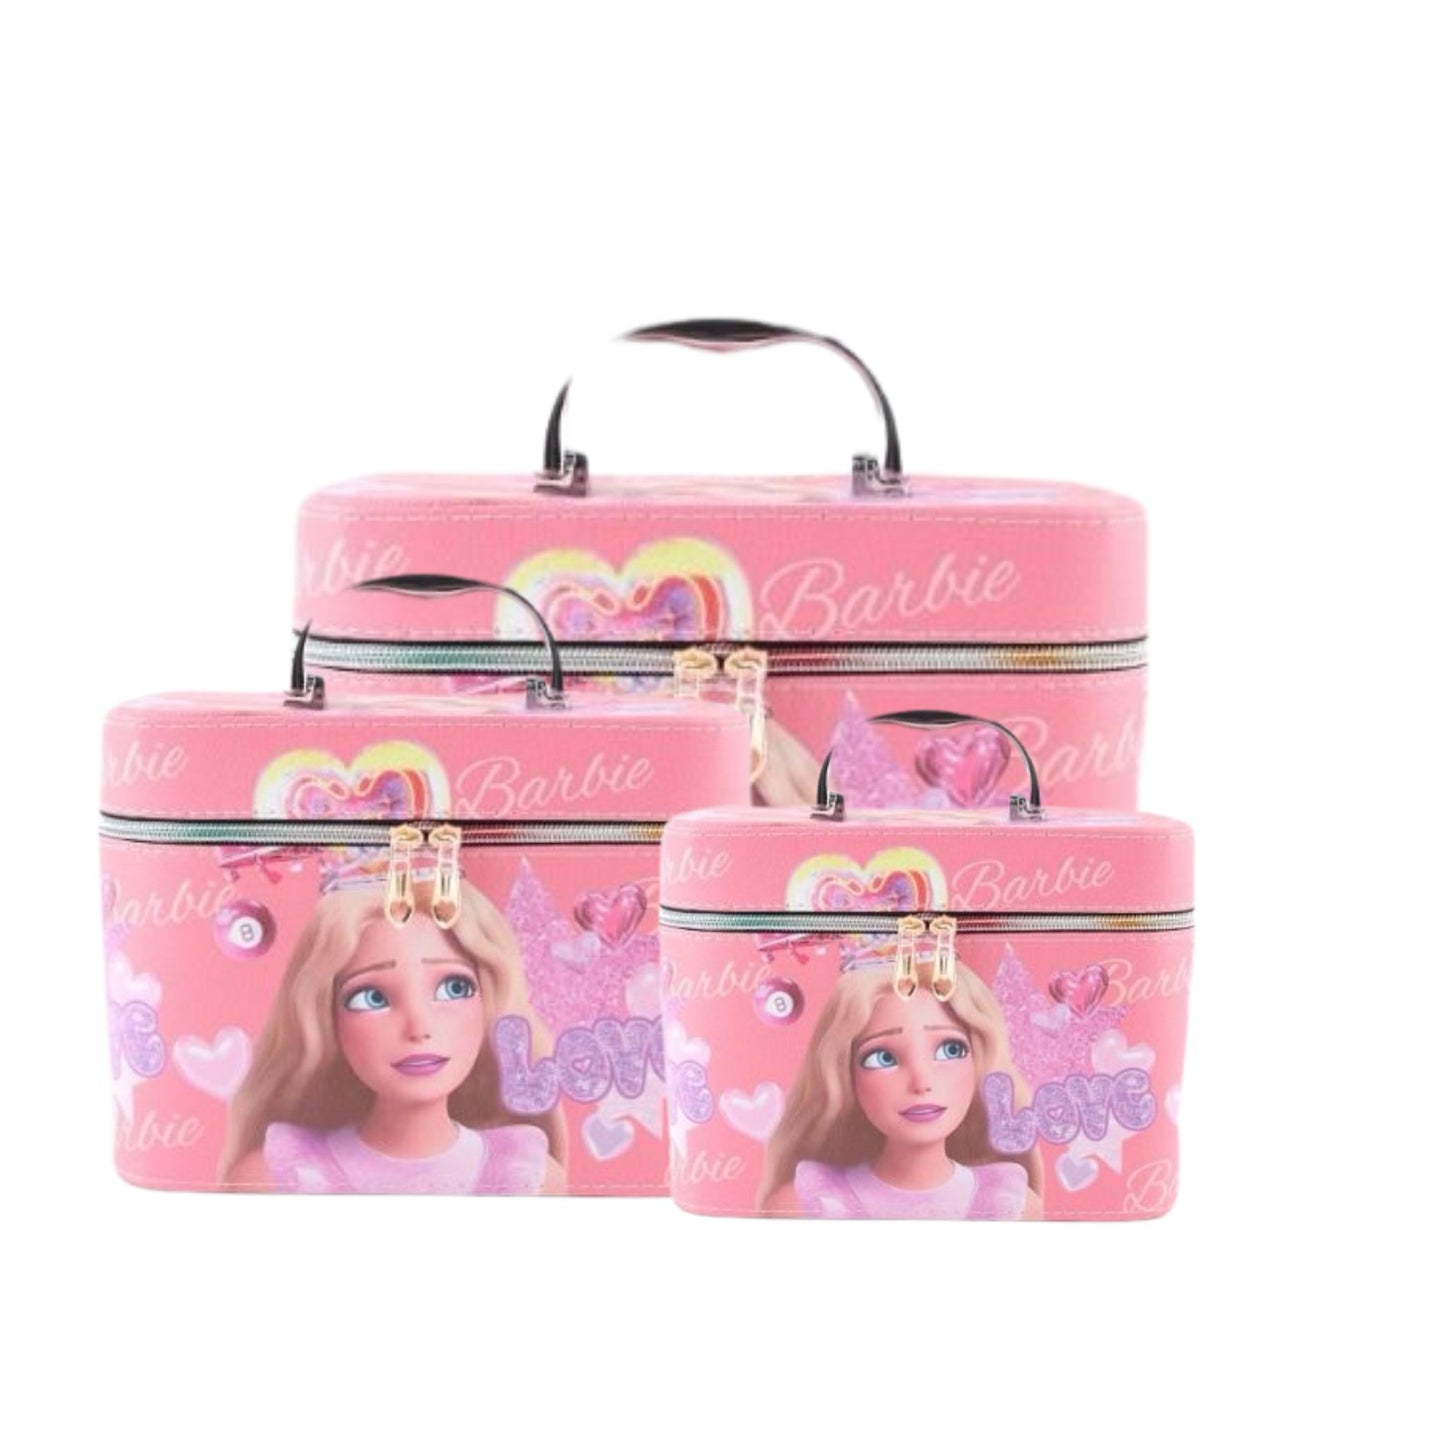 A1805 Barbie Cosmetic Case